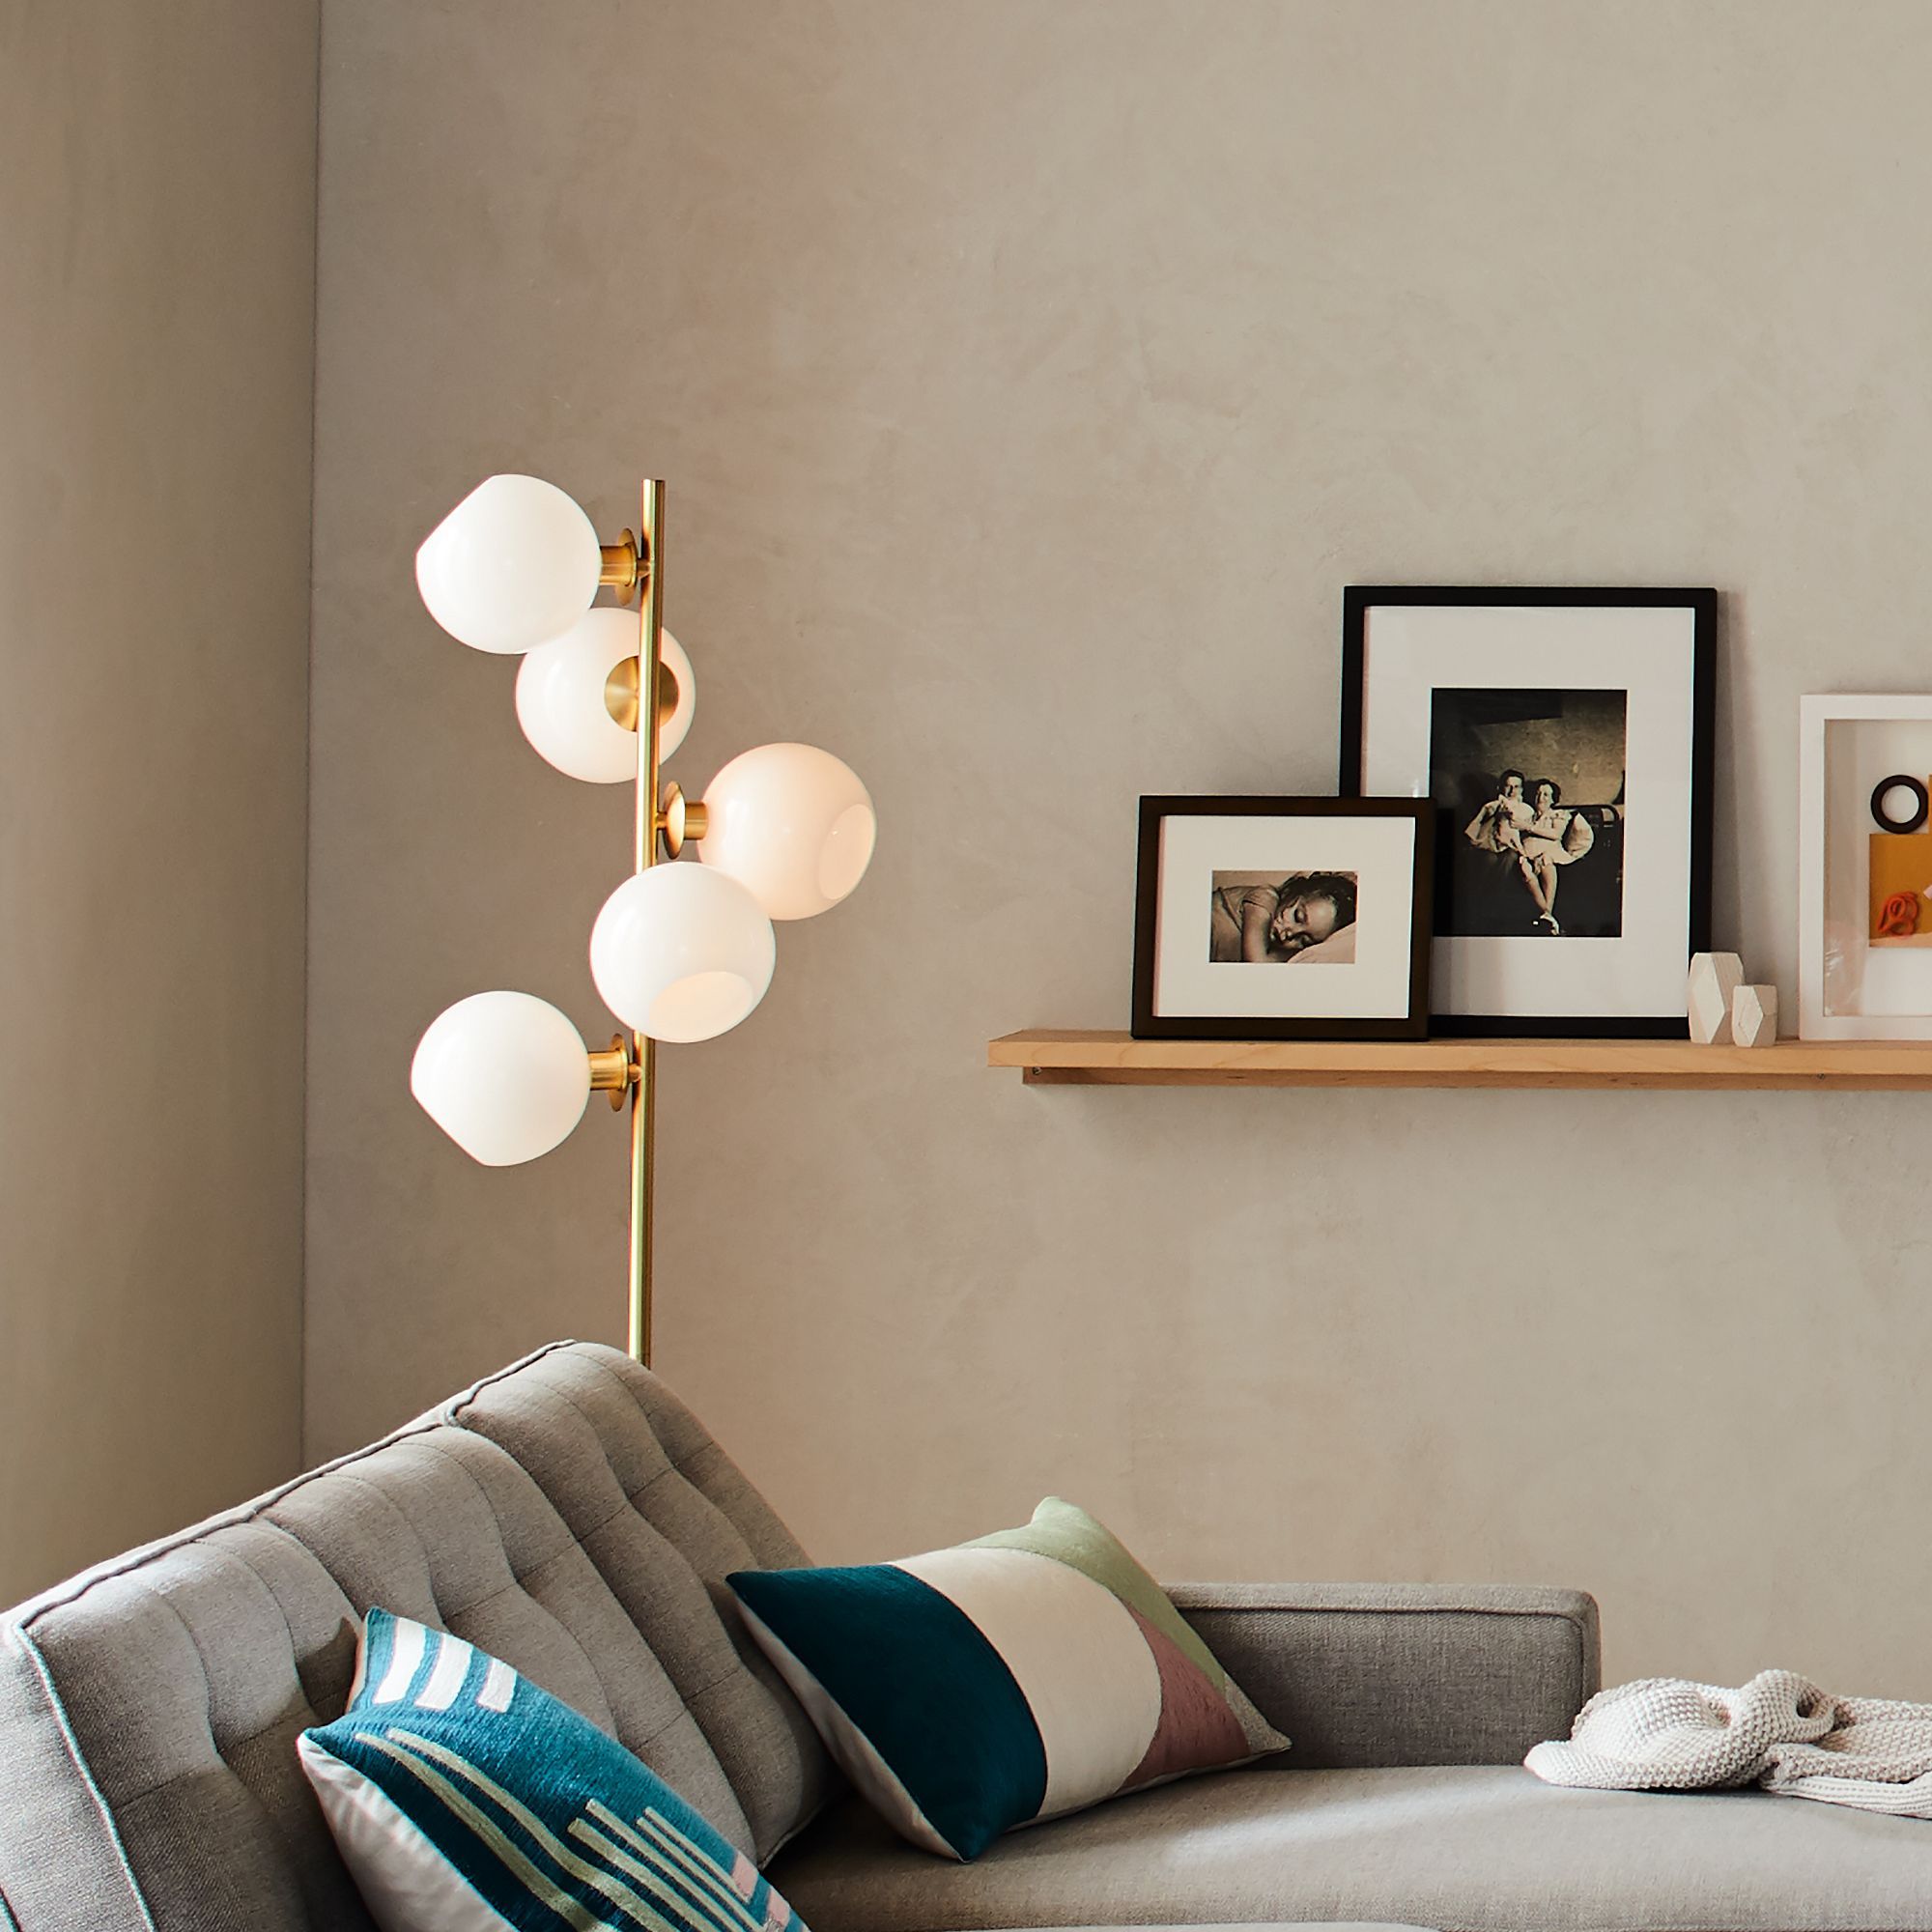 10 Best Floor Lamps For Living Room